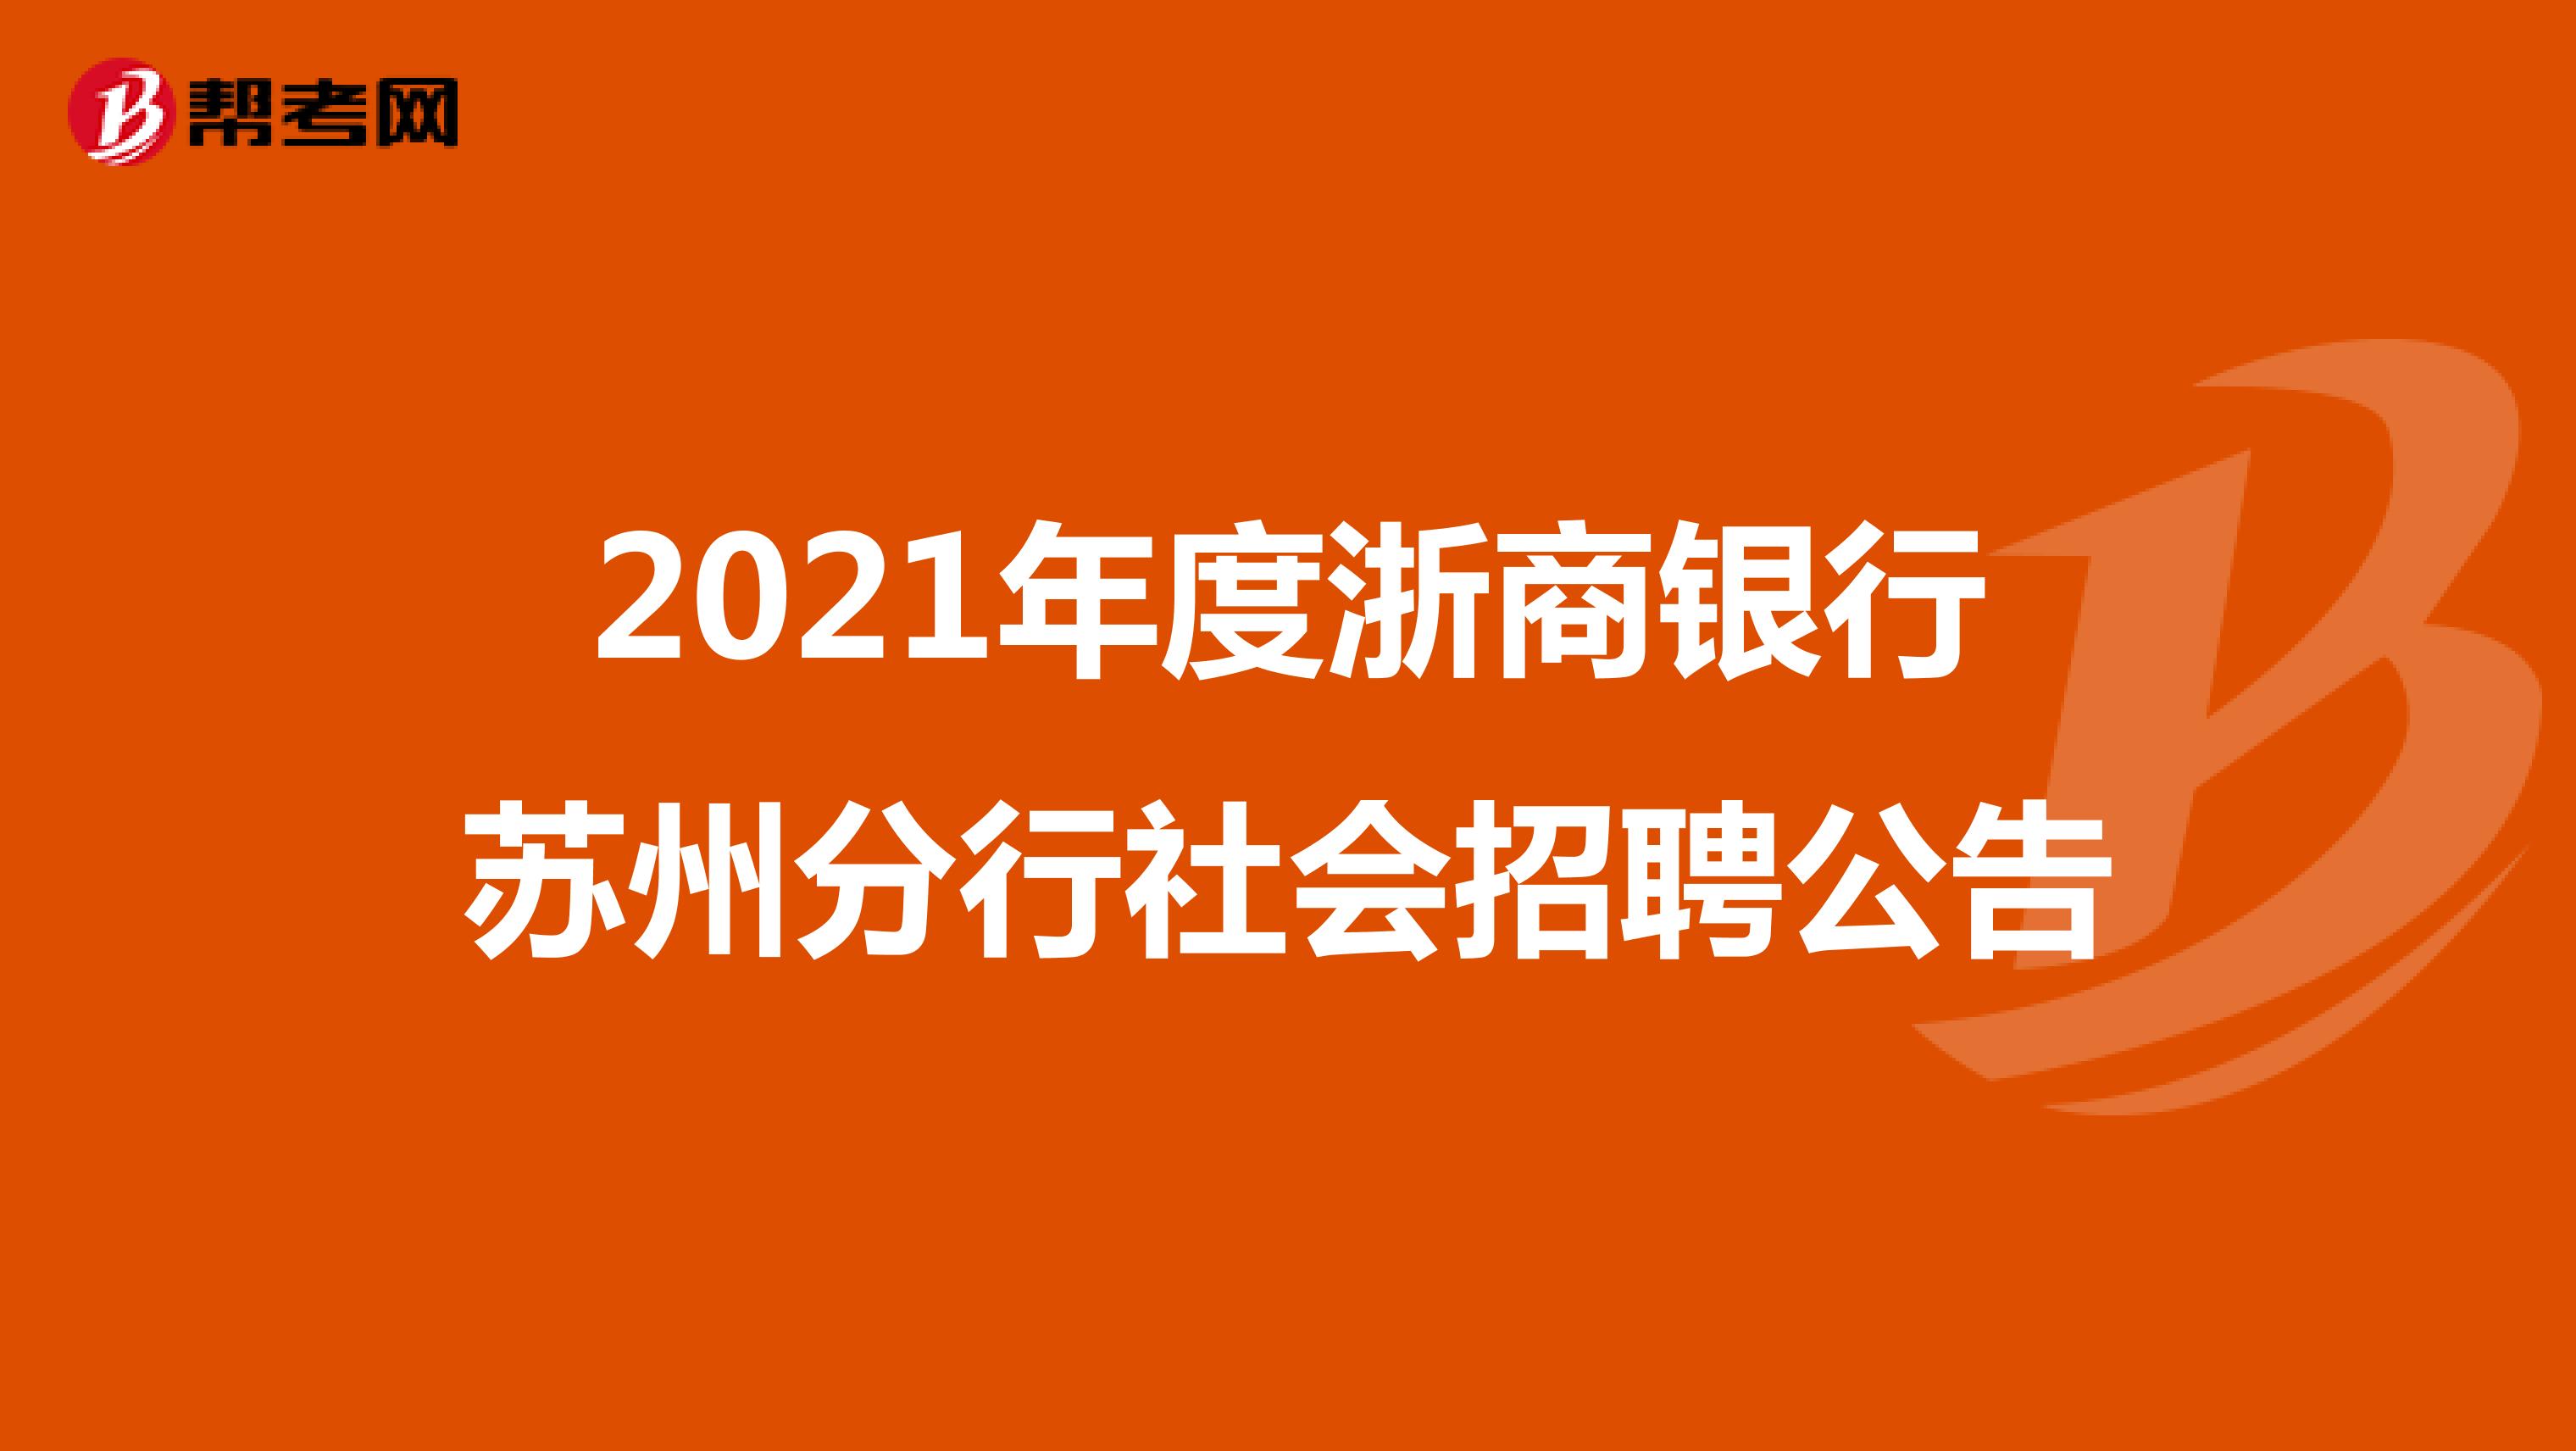 2021年度浙商银行苏州分行社会招聘公告